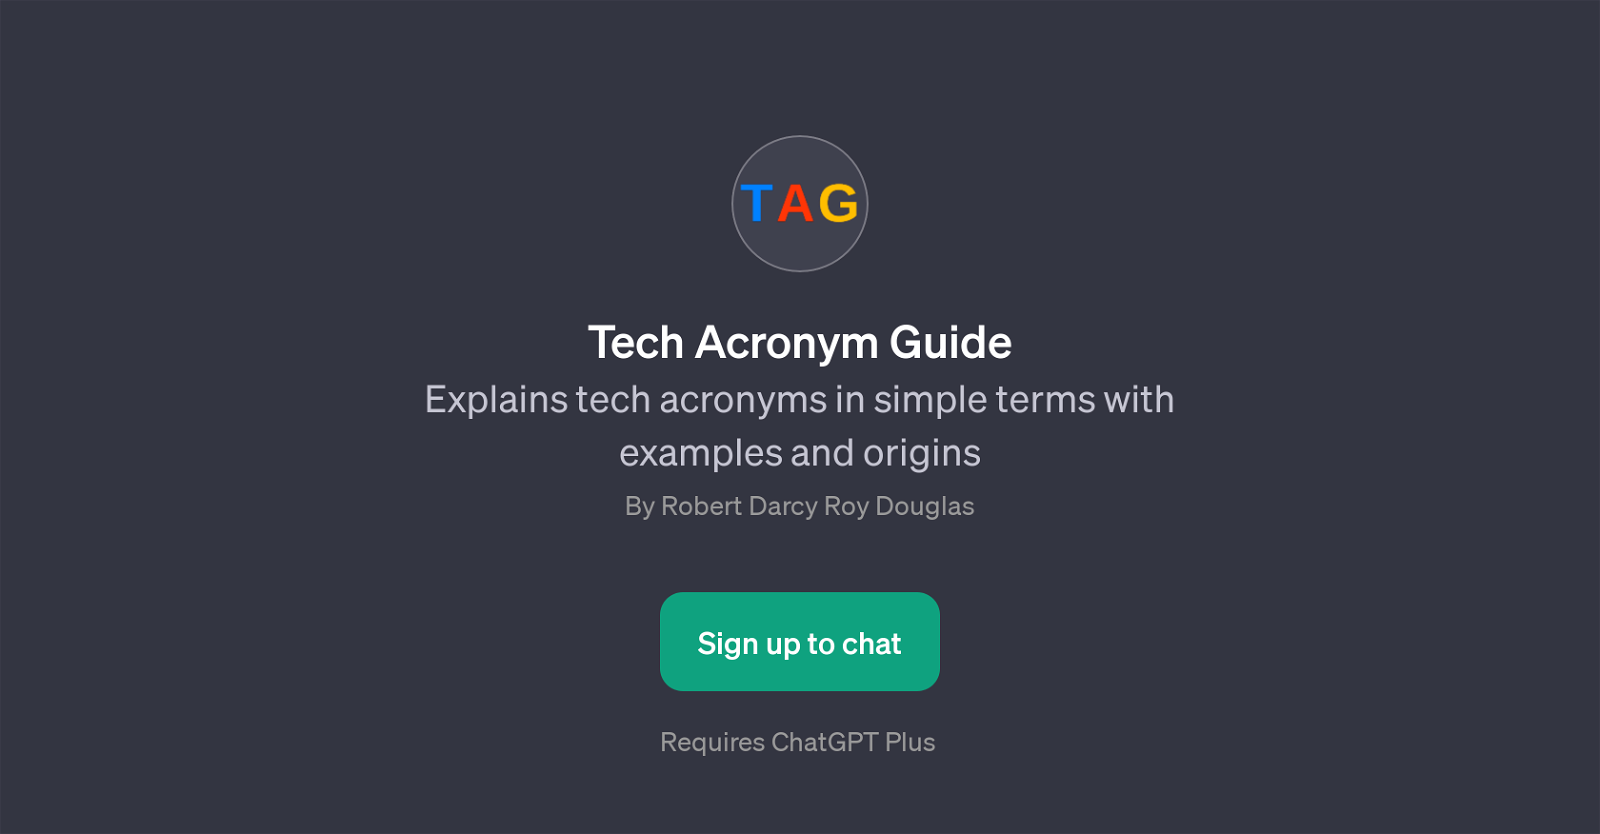 Tech Acronym Guide website